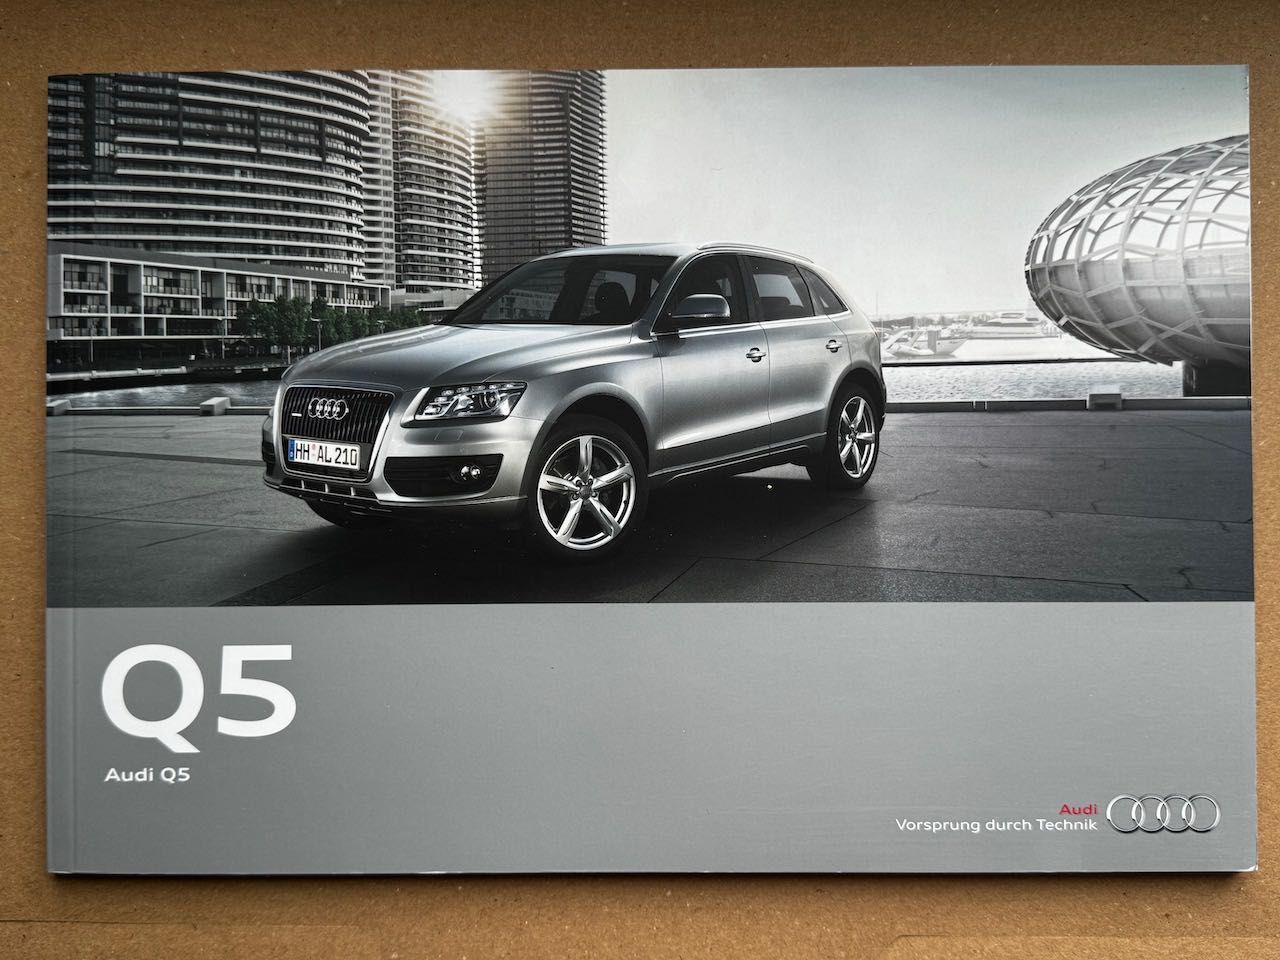 2010 / Audi Q5 (8R) / DE / prospekt katalog